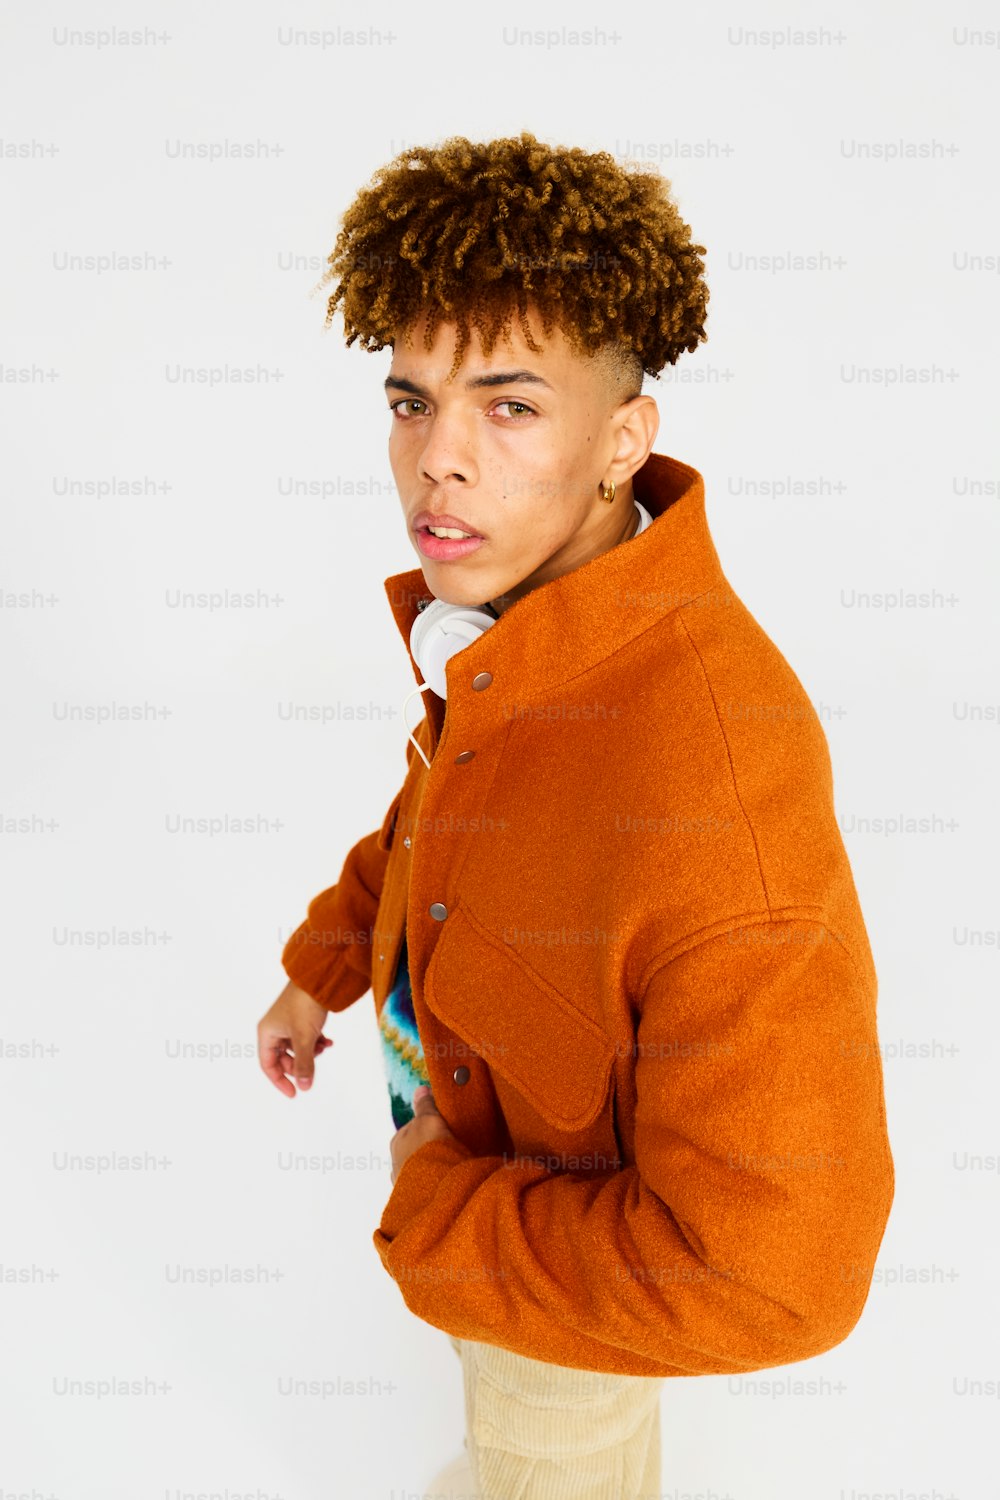 Un hombre de pelo rizado con una chaqueta naranja